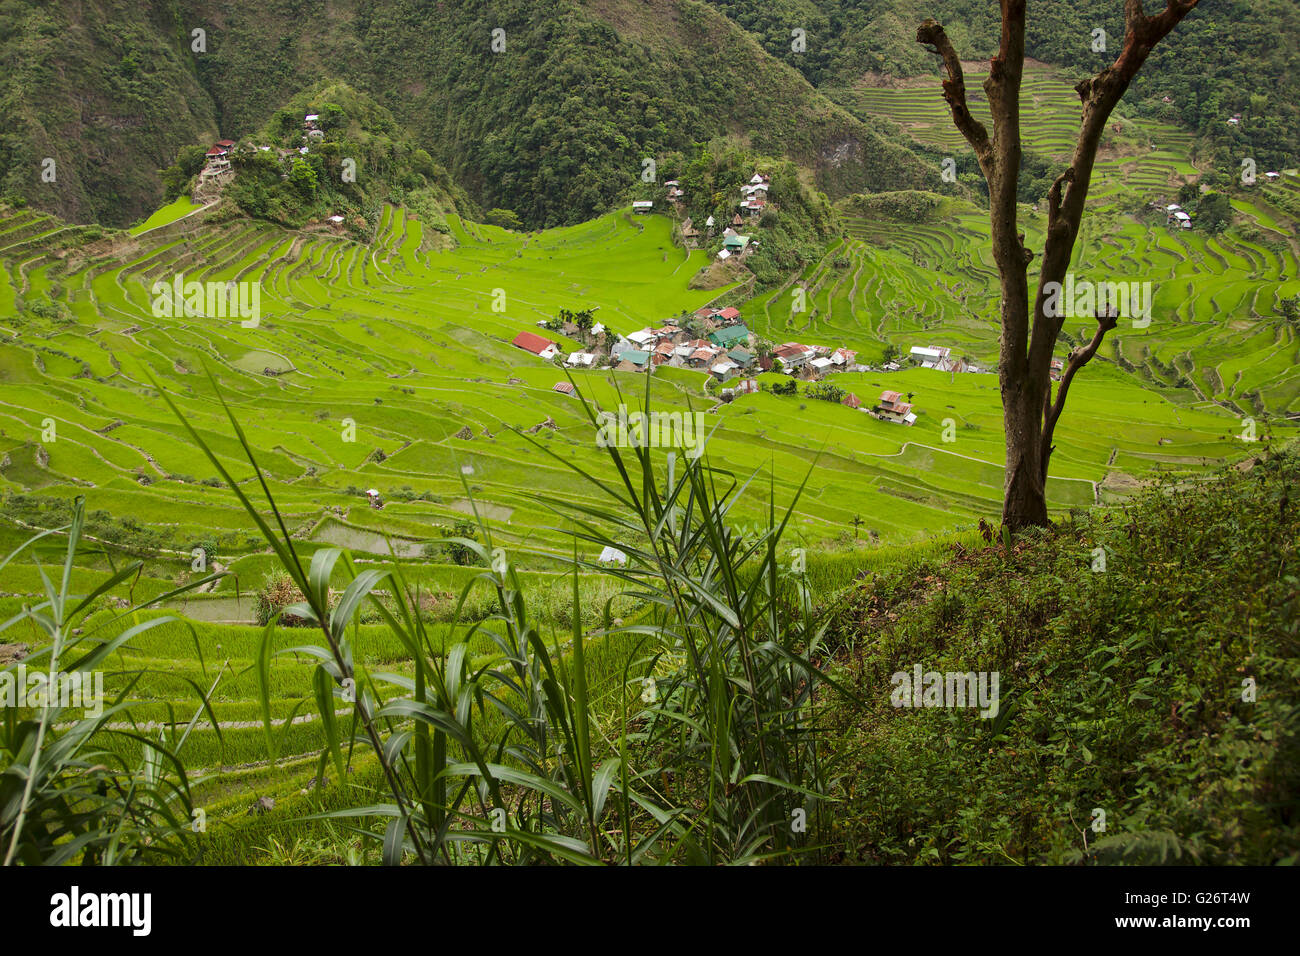 Batad, village Ifuago et rizières en terrasses, Philippines Banque D'Images